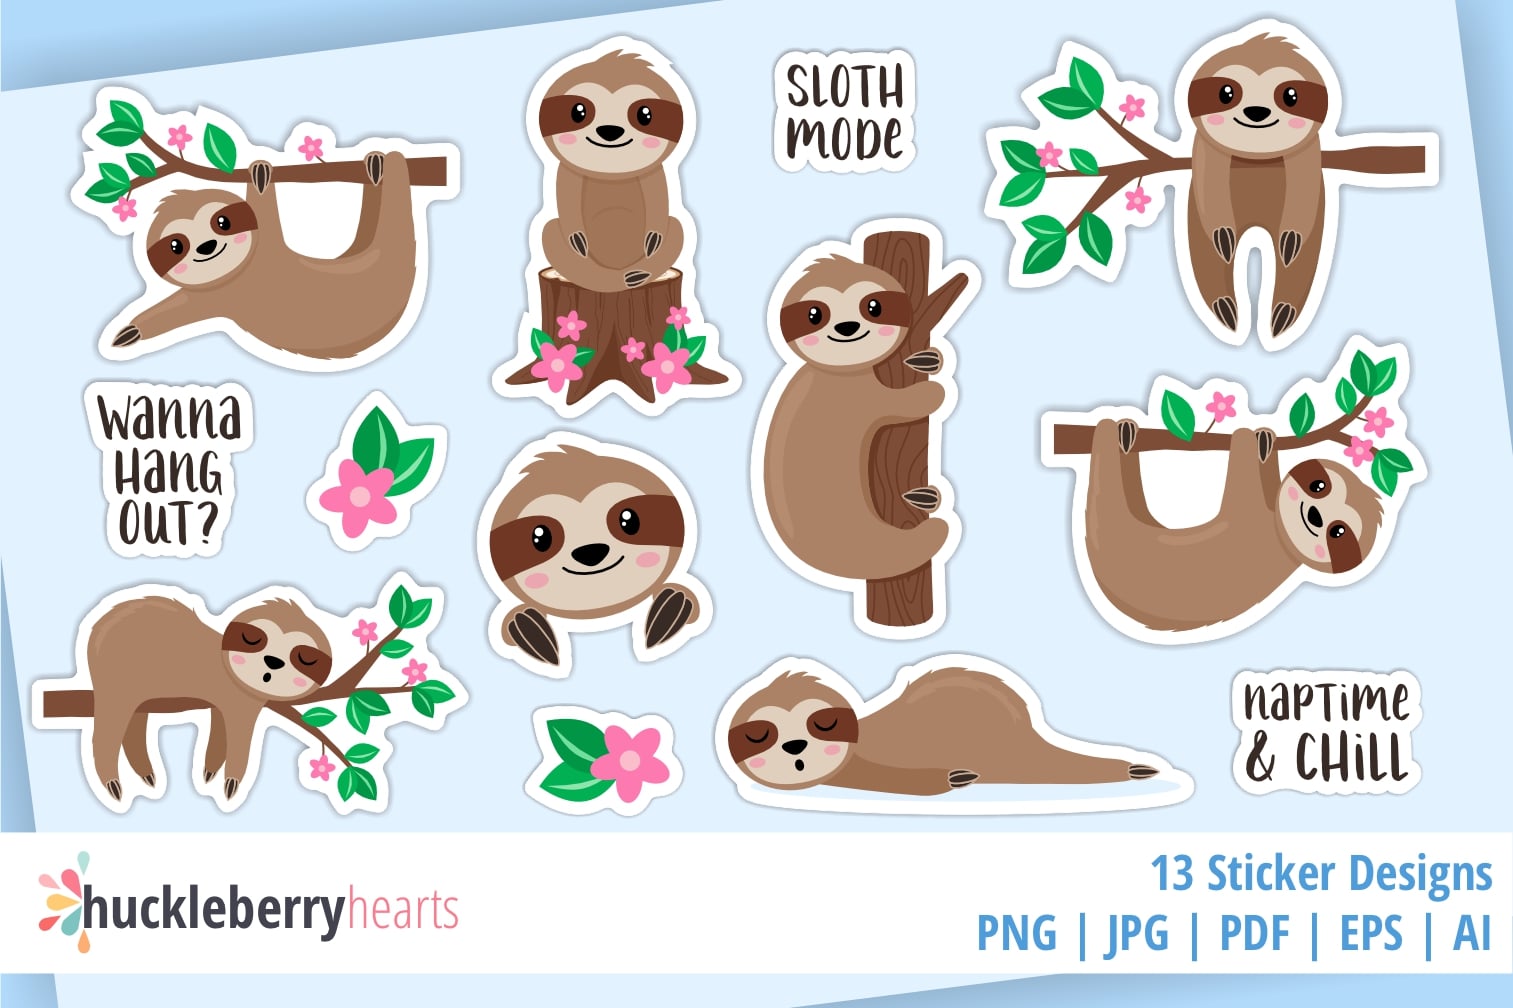 Buy Sloth White X sticker - Die cut stickers - StickerApp